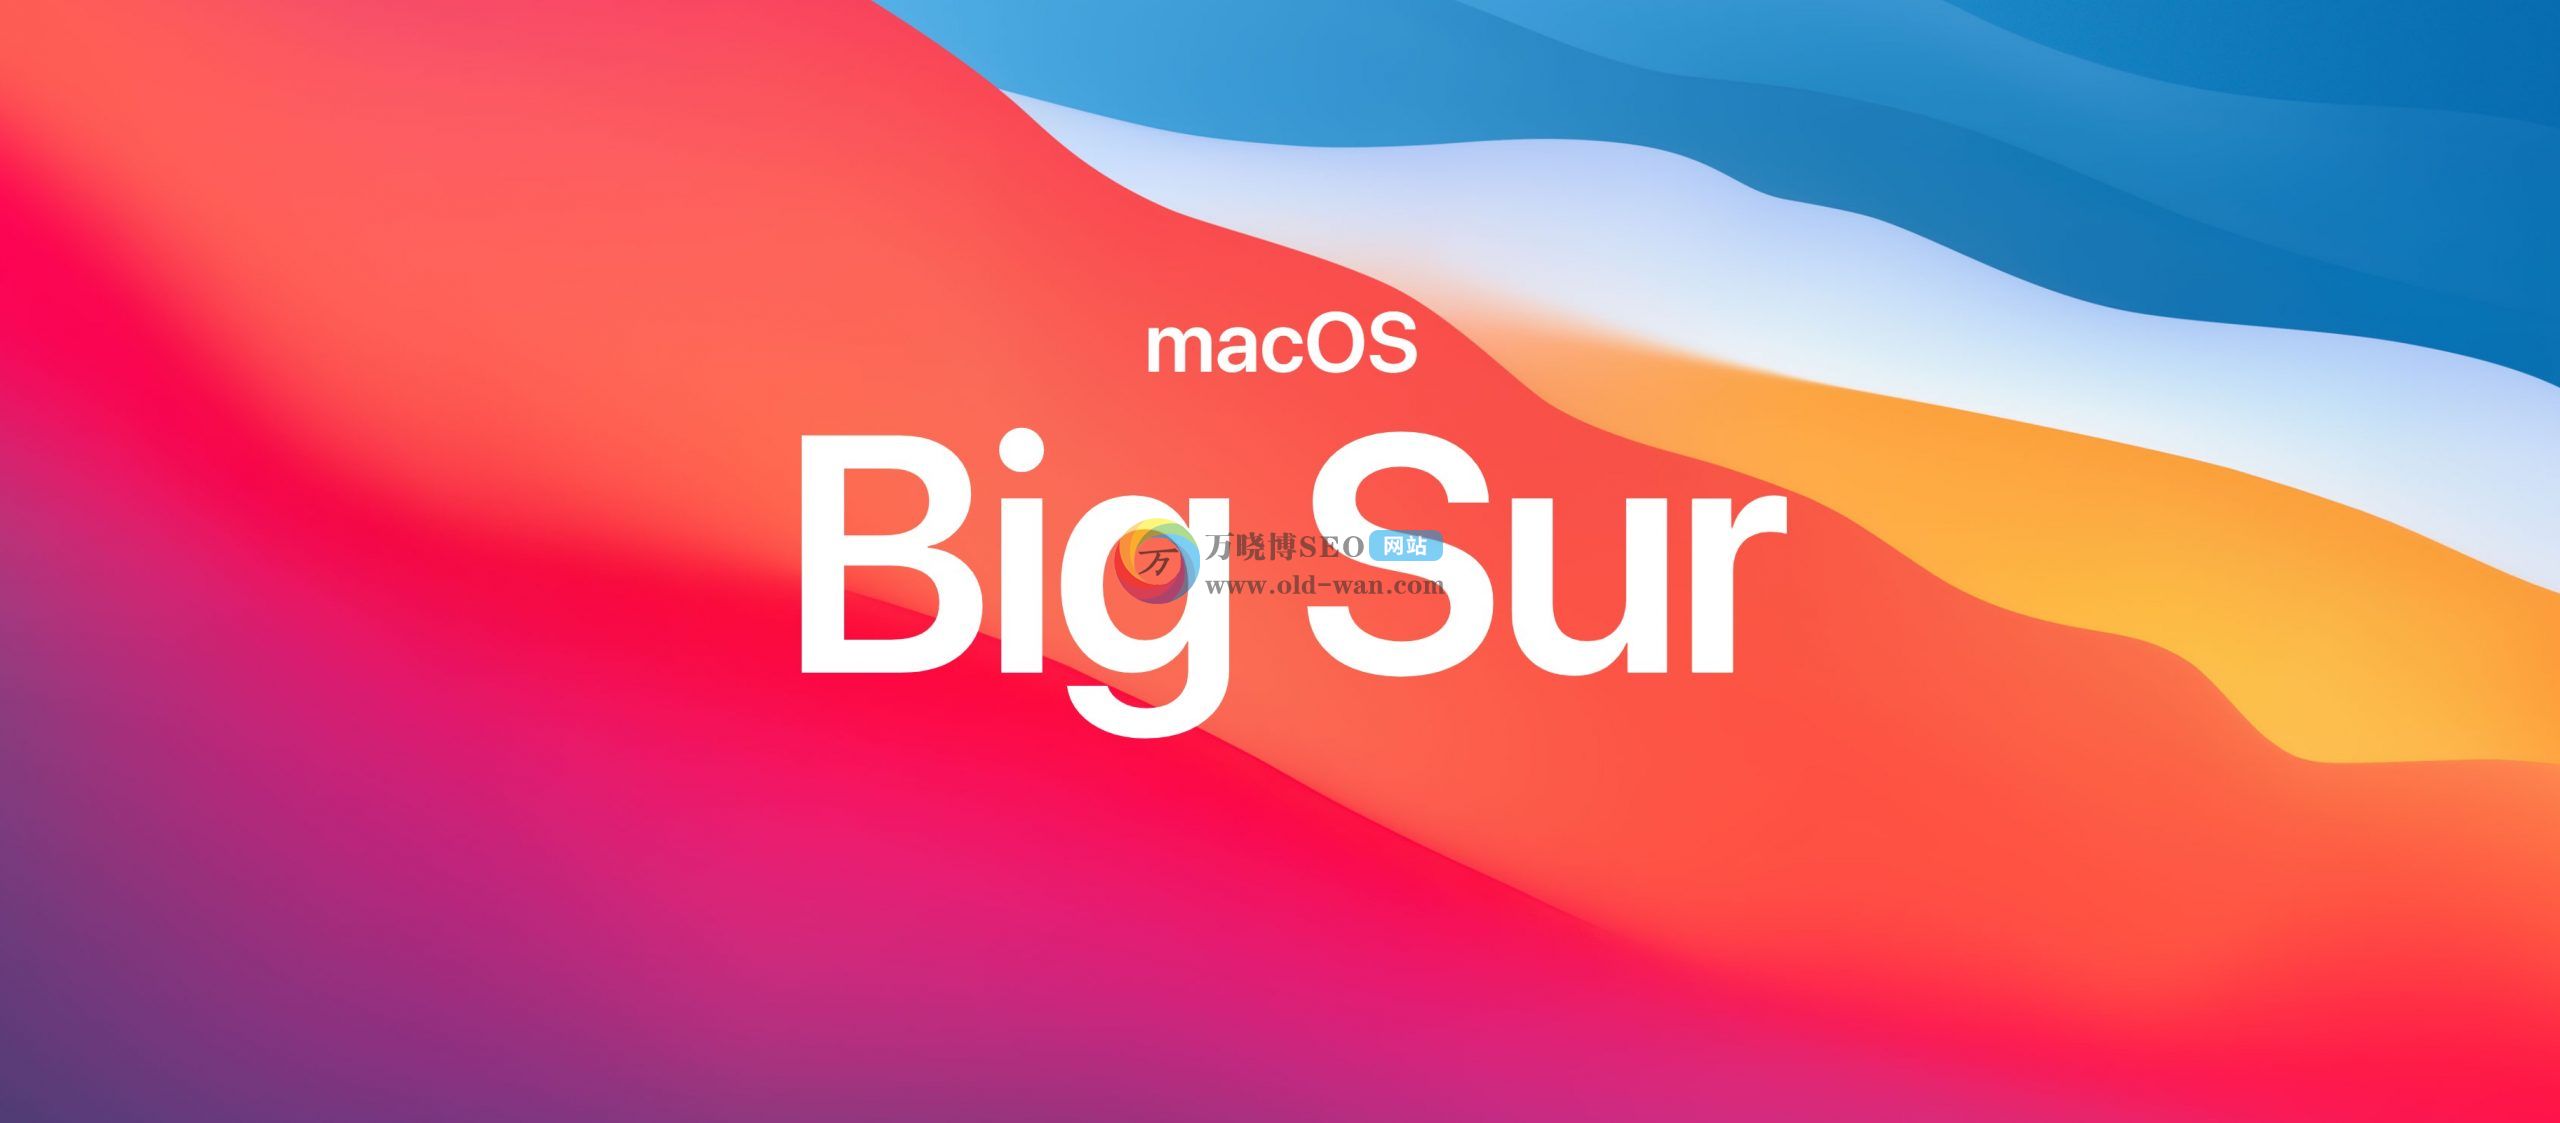 【macOS11启动u盘制作】通过终端命令制作macOS Big Sur 11正式版U盘启动